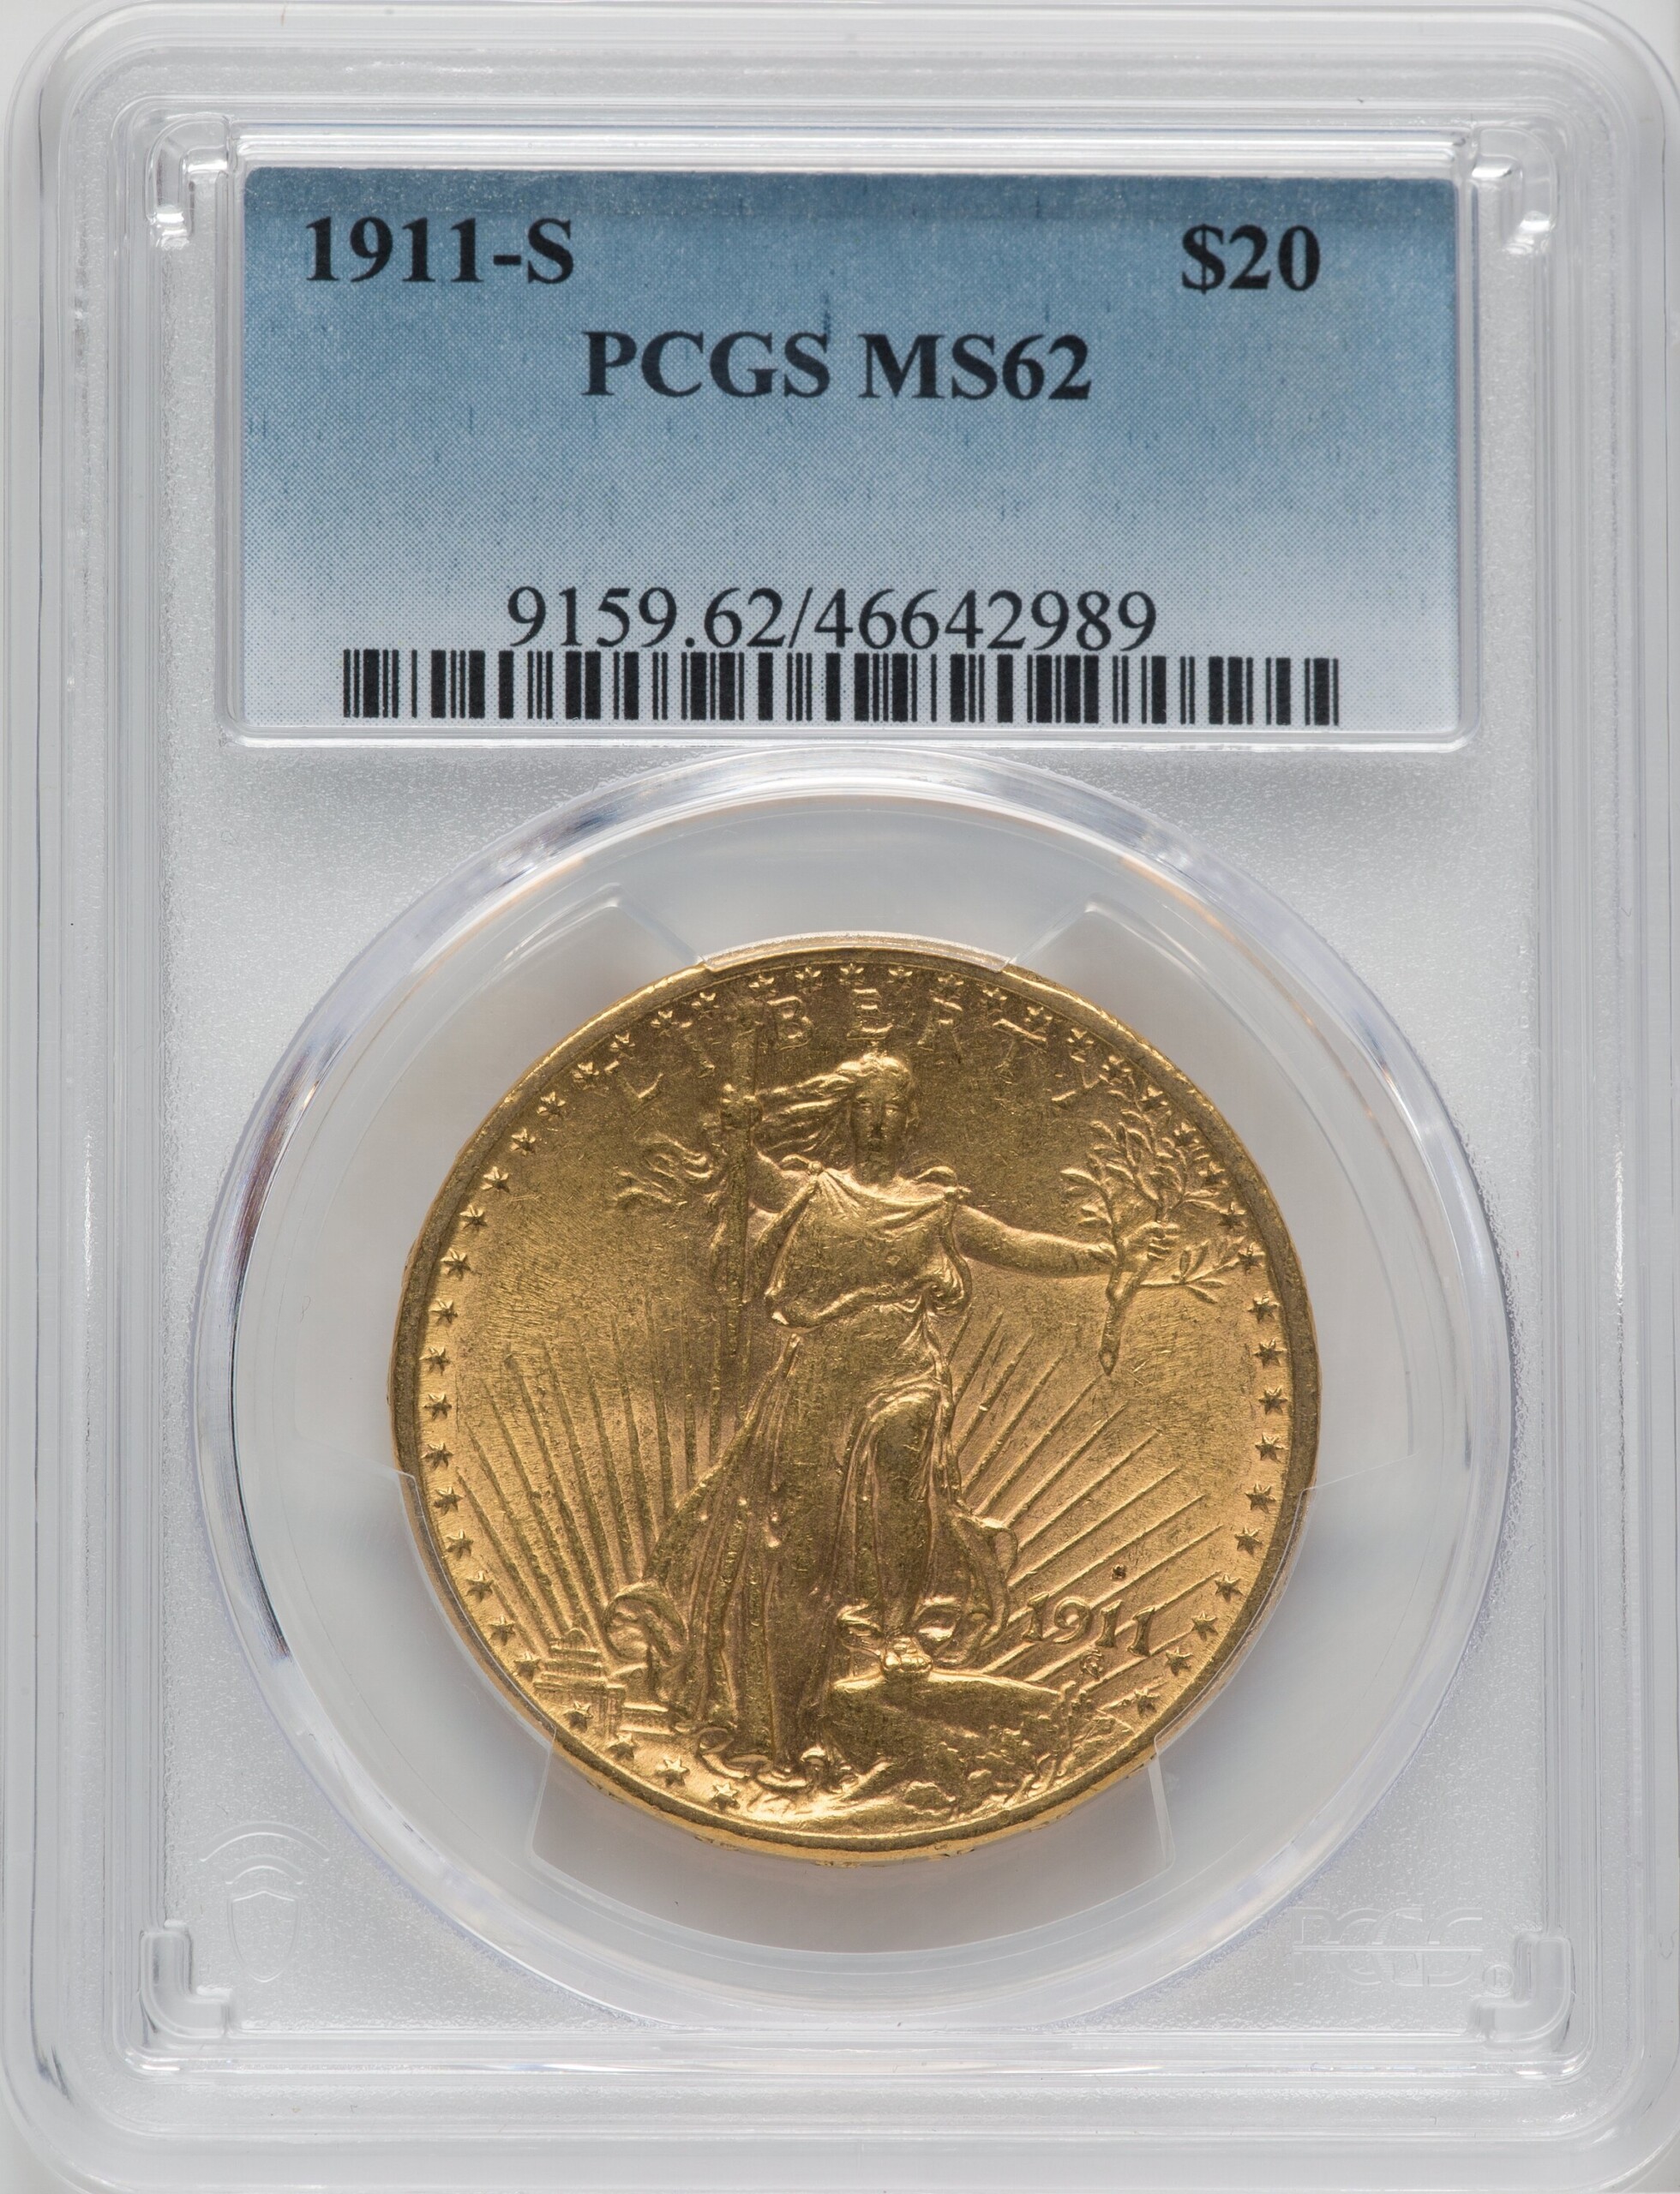 1911-S $20 62 PCGS